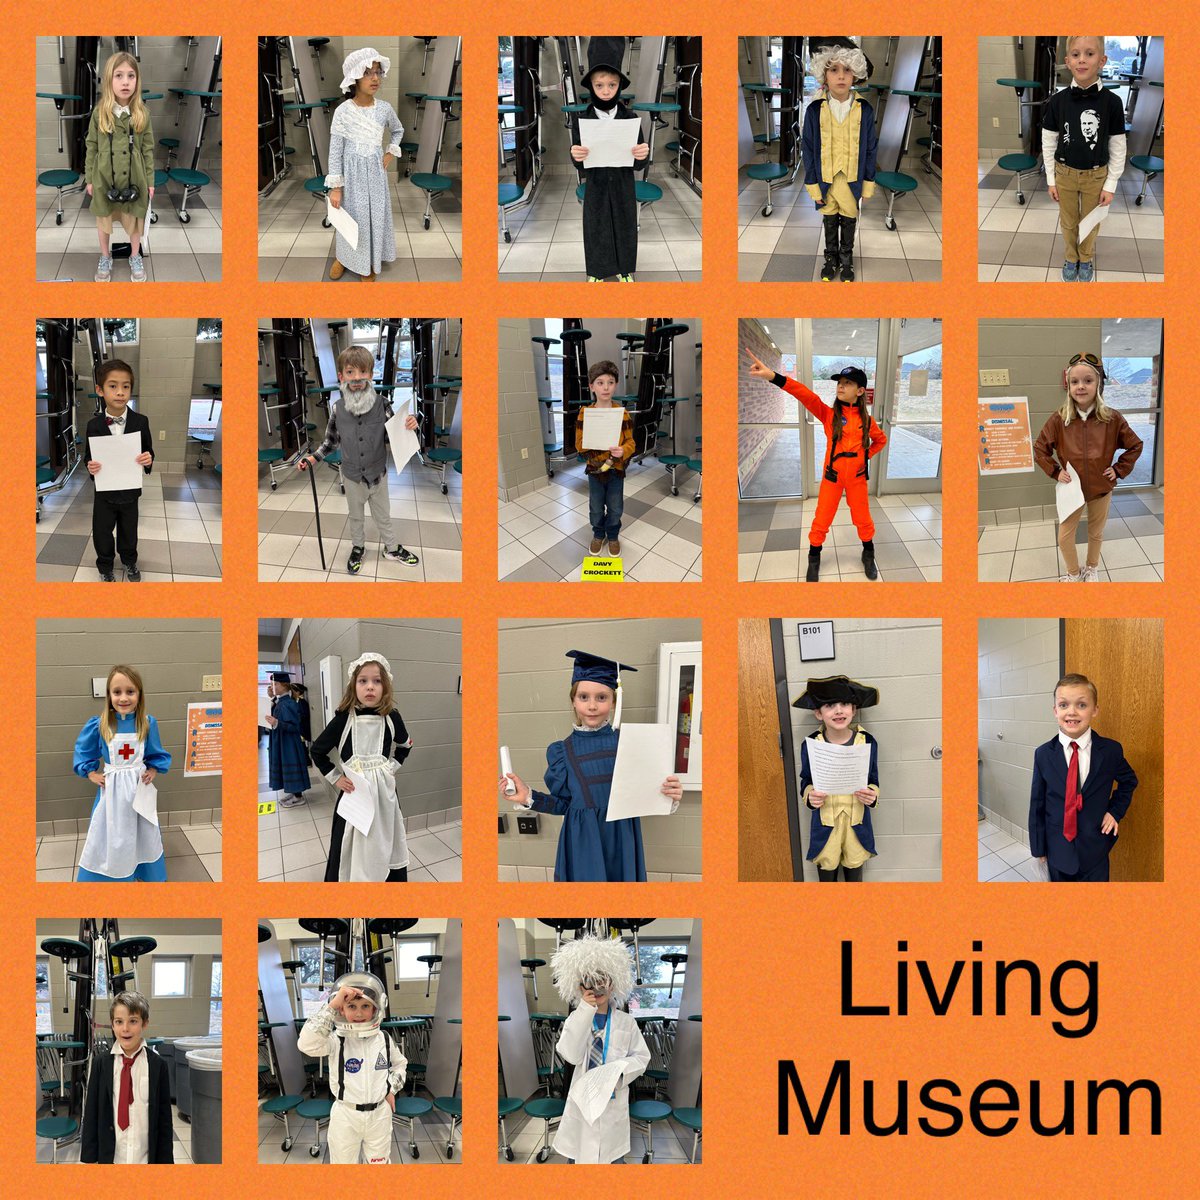 So proud of these kids! #livingmuseum @basstweeties